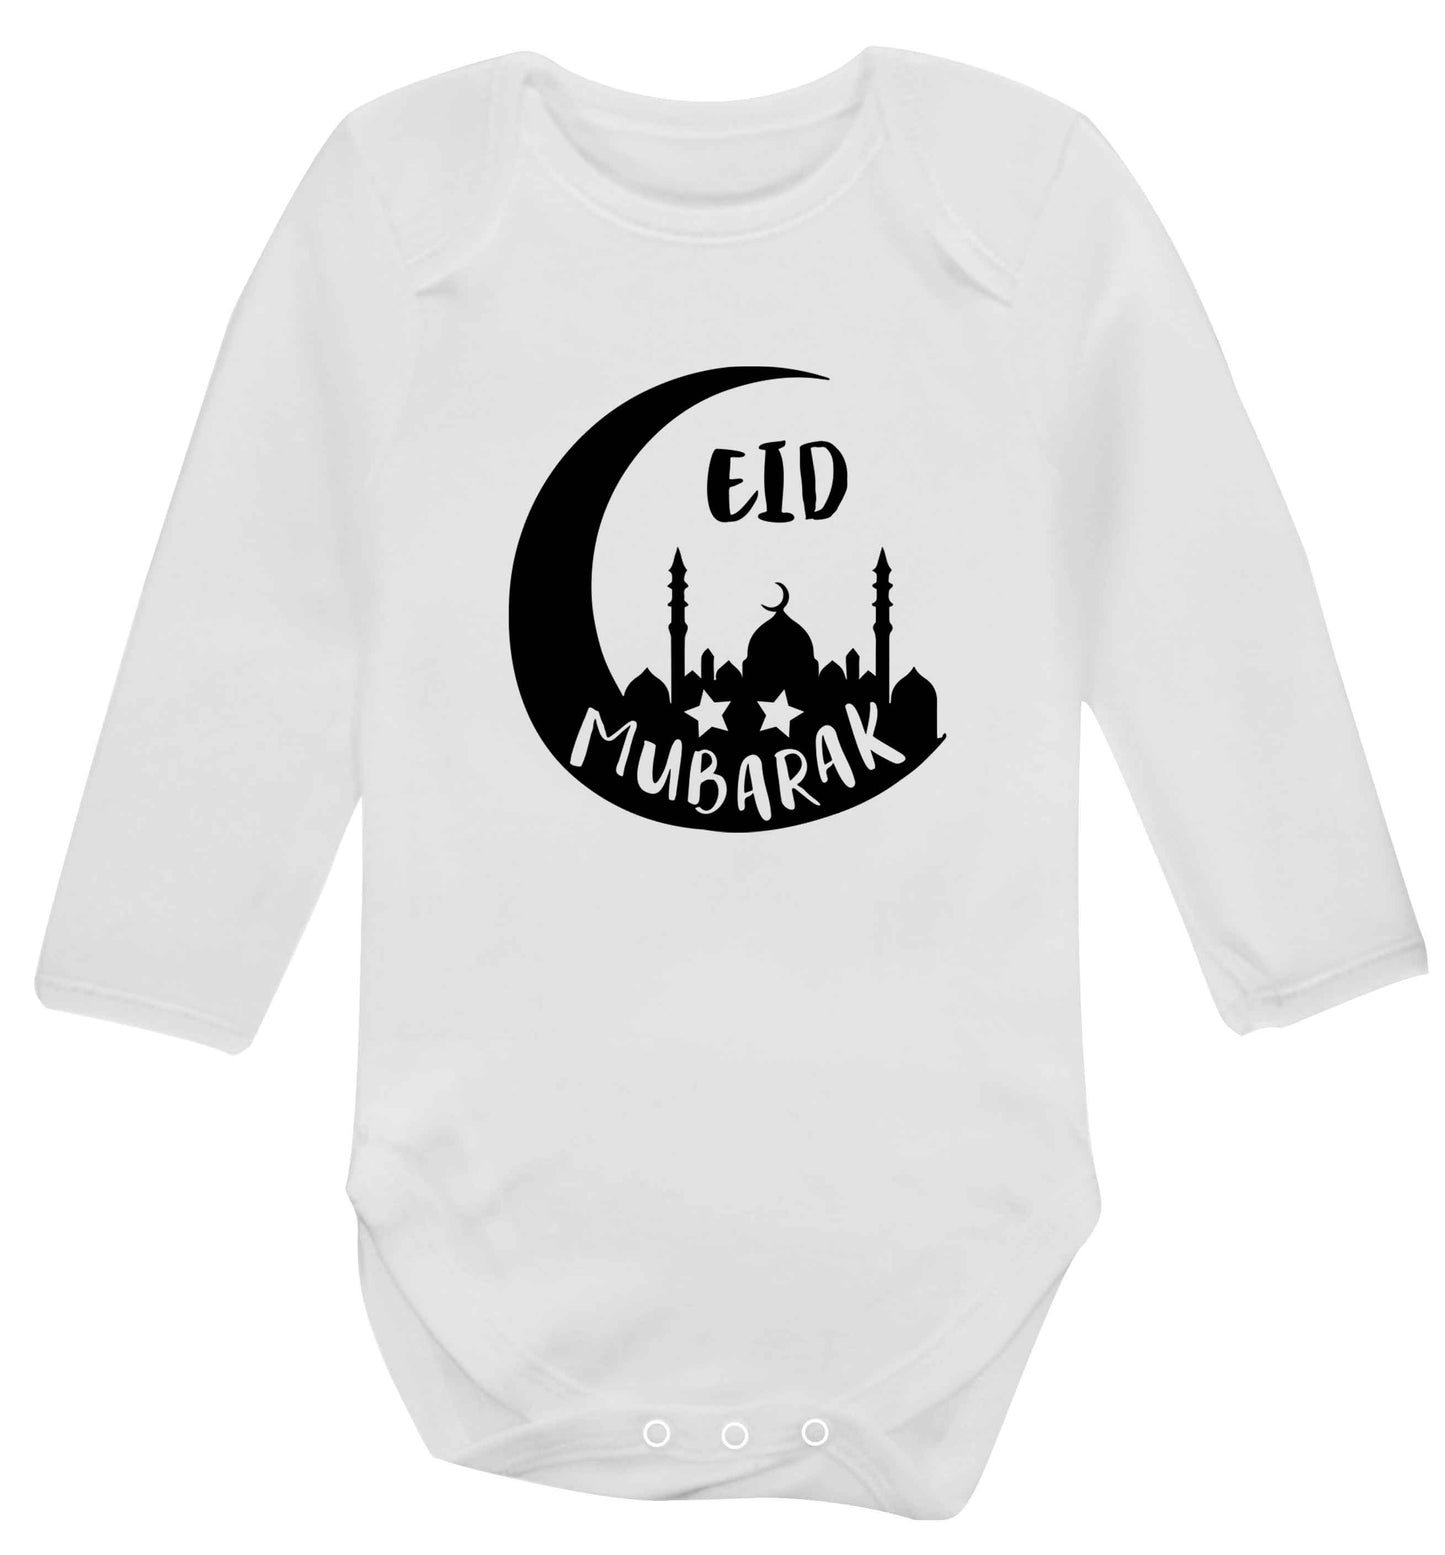 Eid mubarak baby vest long sleeved white 6-12 months